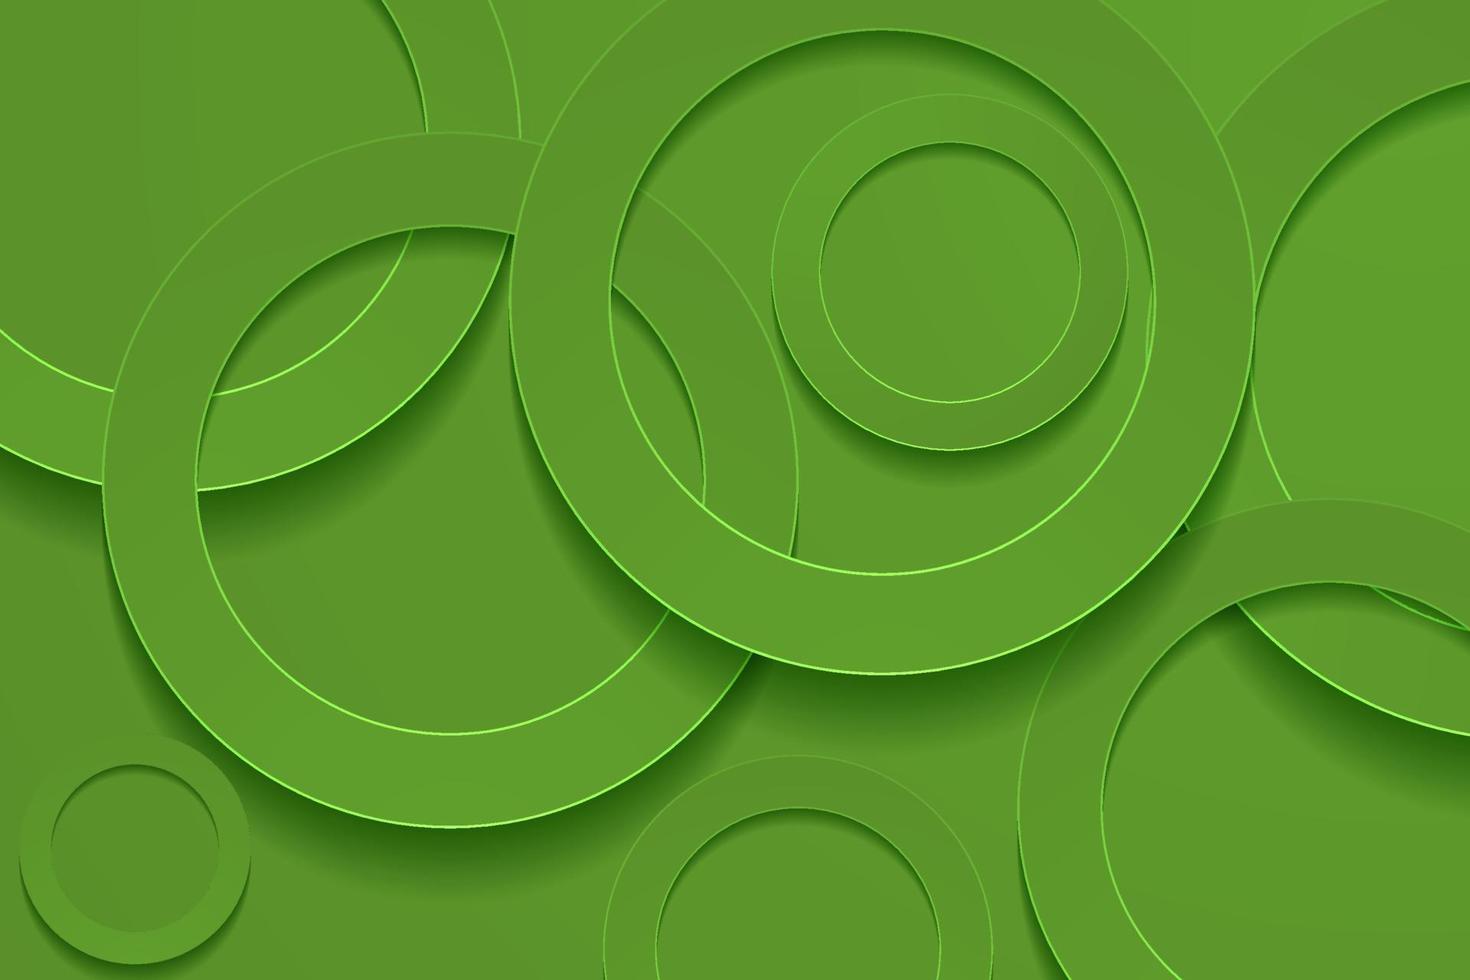 fundos verde-oliva monótonos modernos. fundo da camada papercut do círculo 3d. vetor